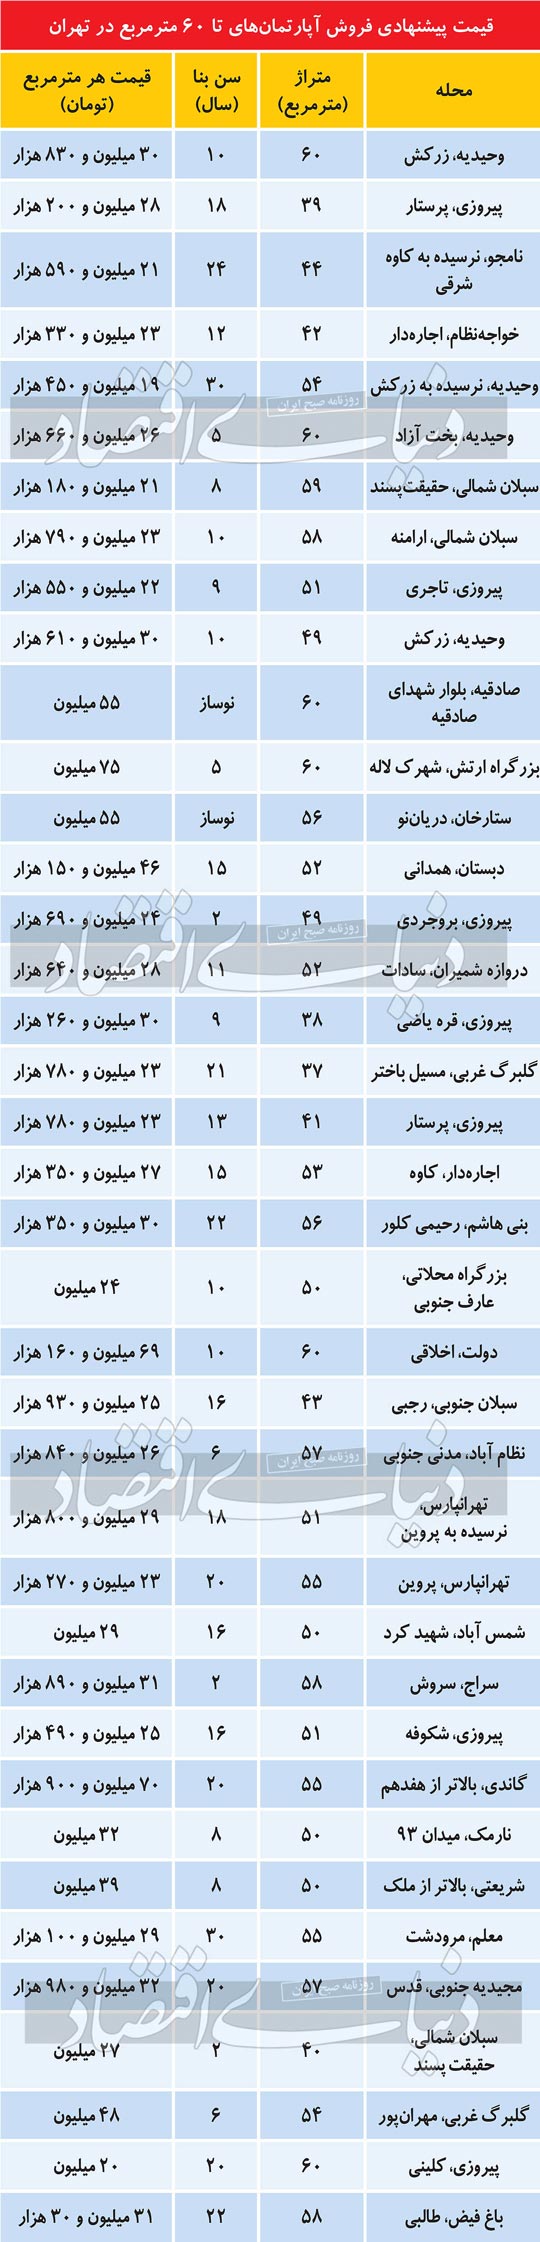 قیمت آپارتمان نقلی در تهران